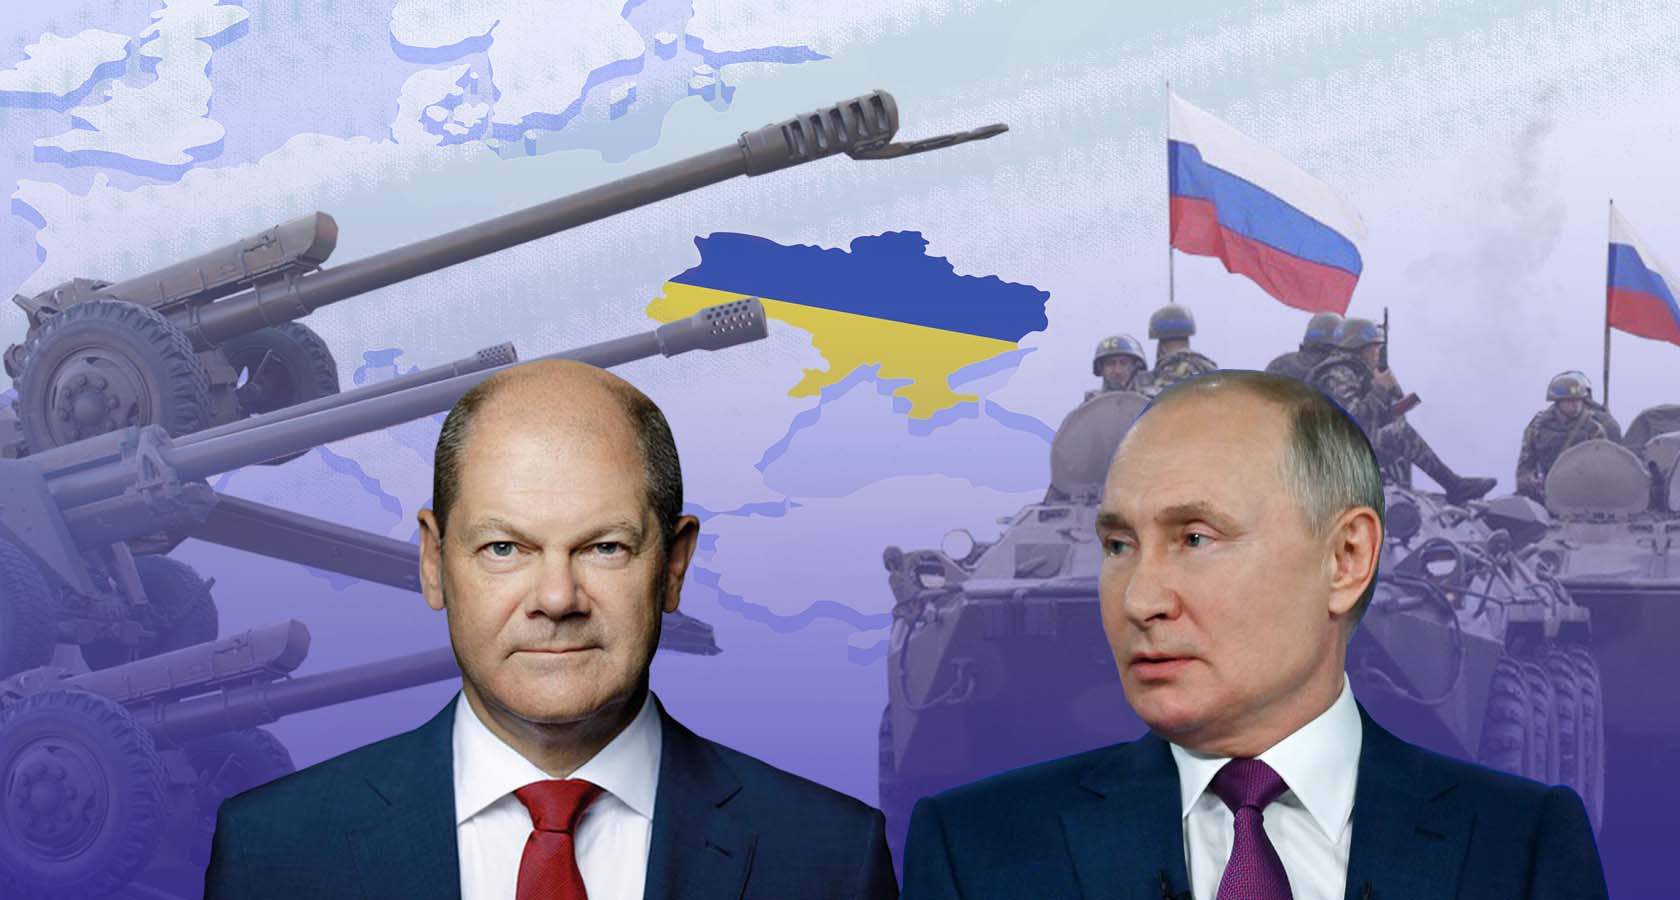 Війна фактично призупинеться , майже до нуля, – Буданов назвав терміни закінчення бойових дій в Україні